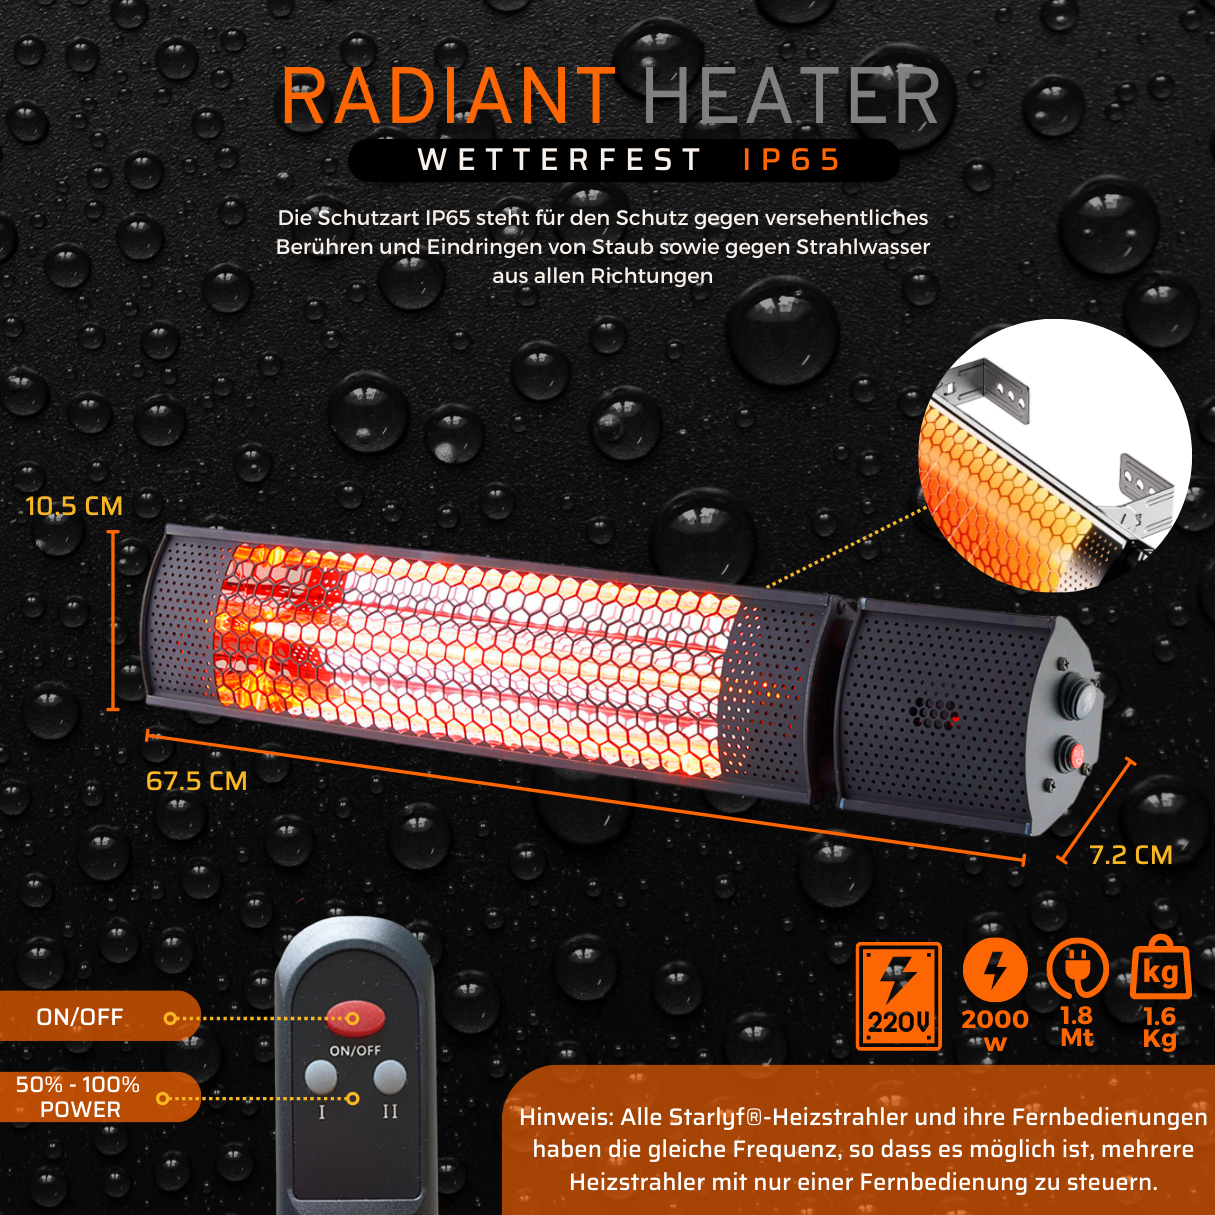 STARLYF Radiant Heater Heizstrahler Raumgröße: Watt, (2000 m³) 20